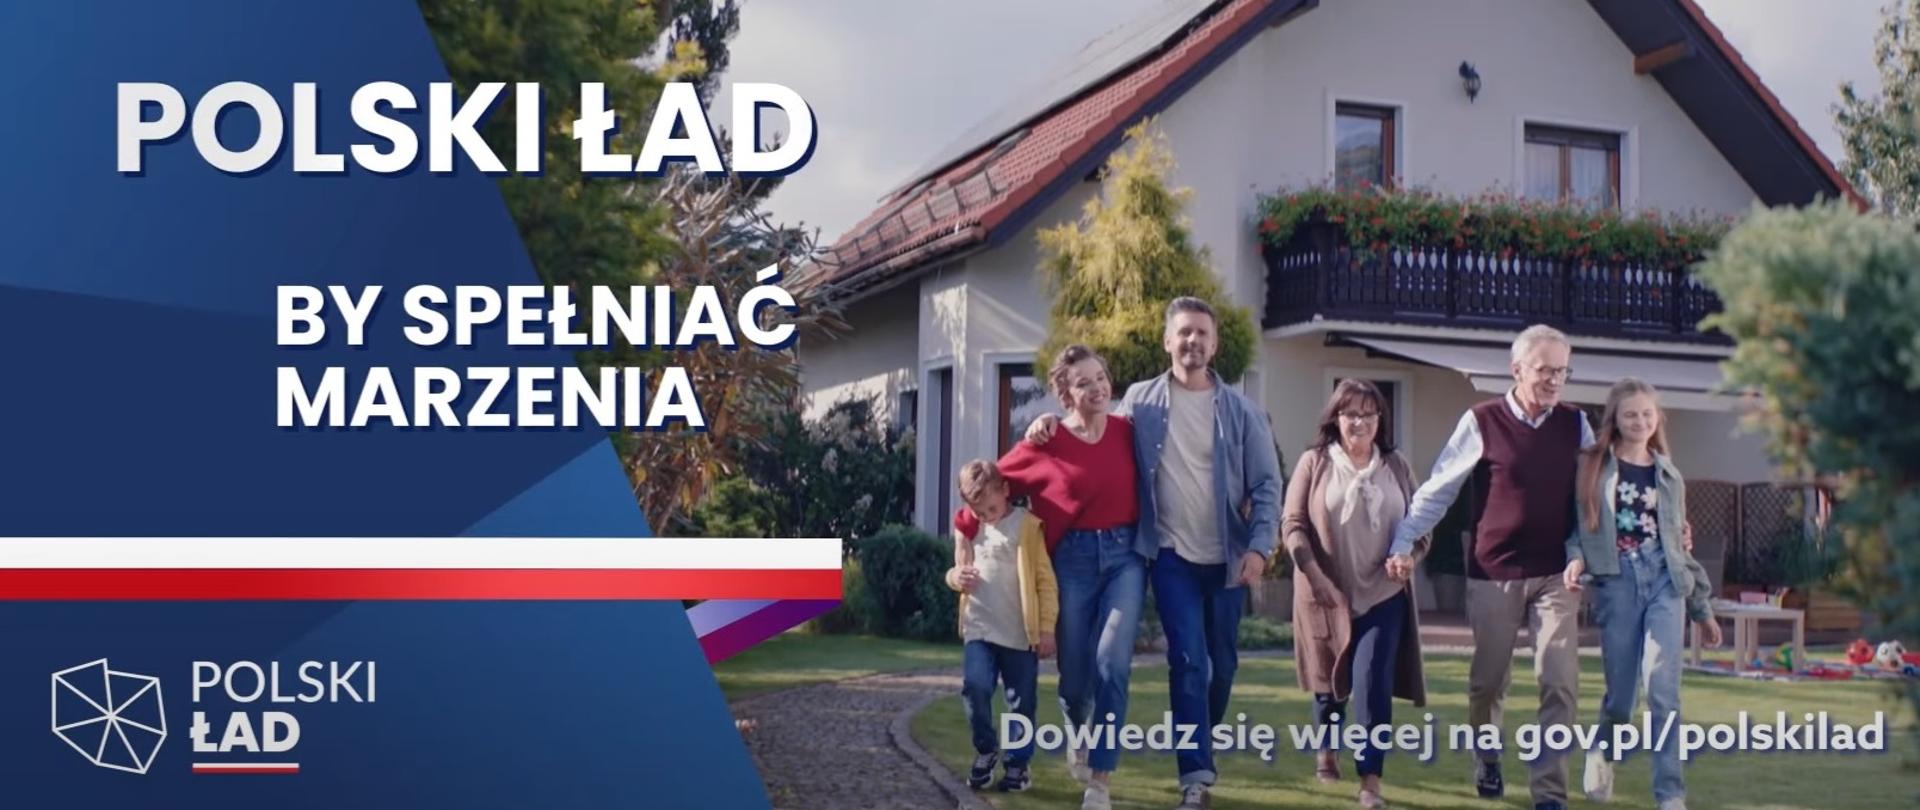 Polski Ład - by spełniać marzenia